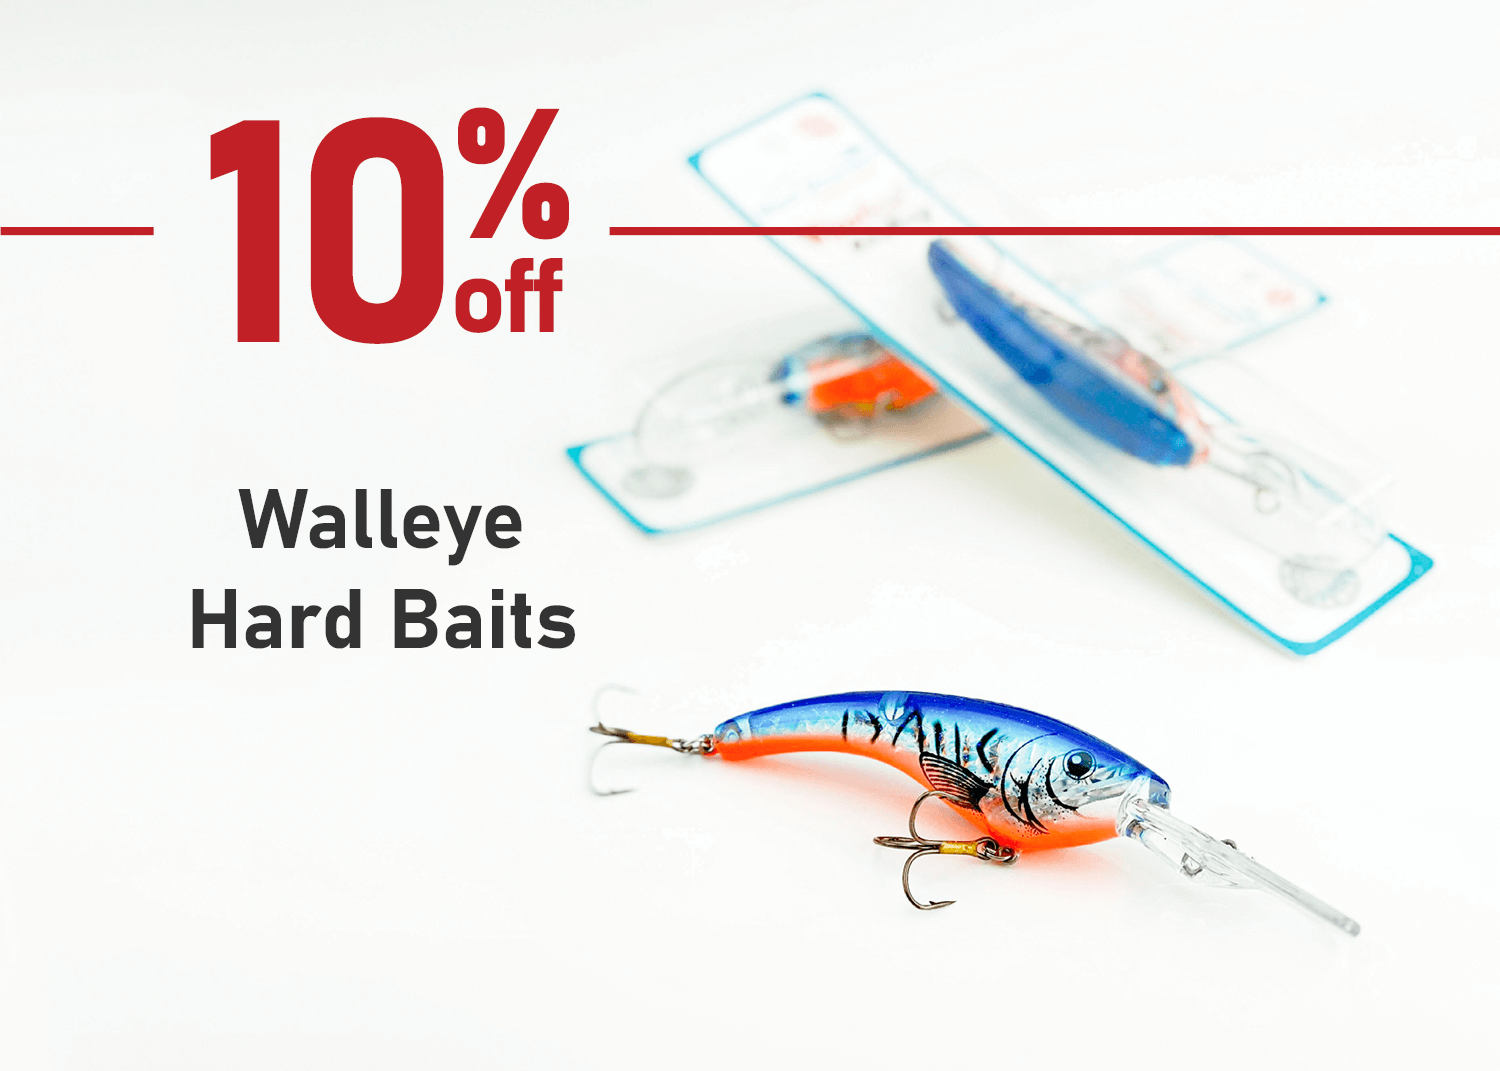 Save 10% on Walleye Hard Baits